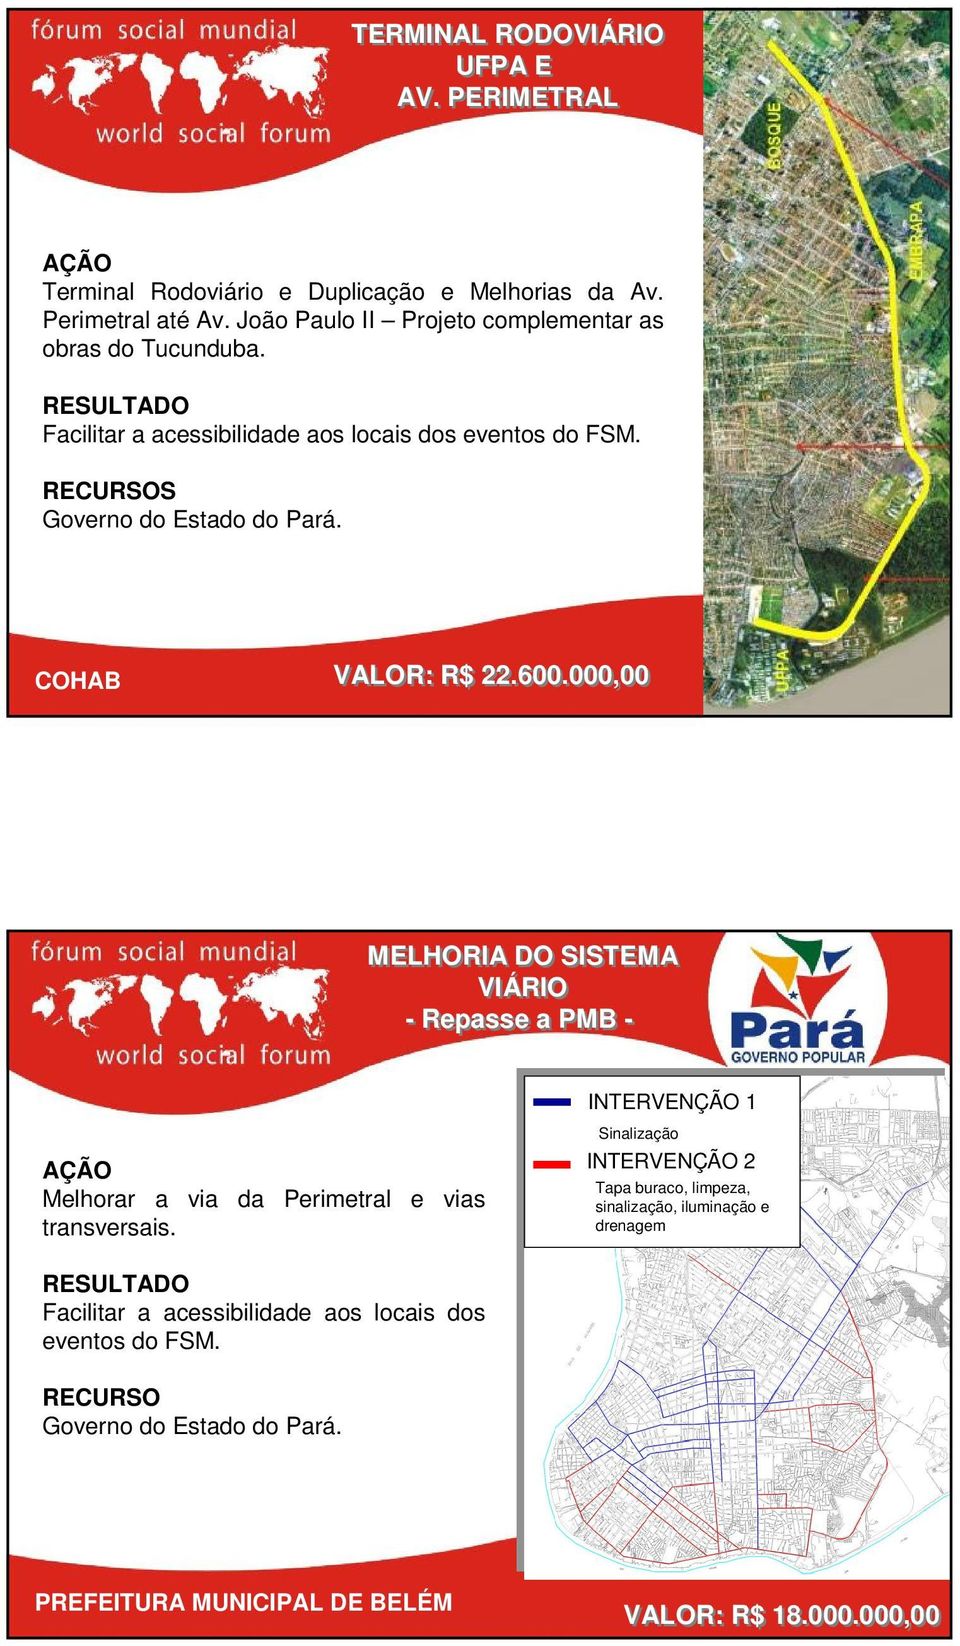 COHAB VALOR: R$ 22.600.000,00 MELHORIA DO SISTEMA VIÁRIO - Repasse a PMB - Melhorar a via da Perimetral e vias transversais.